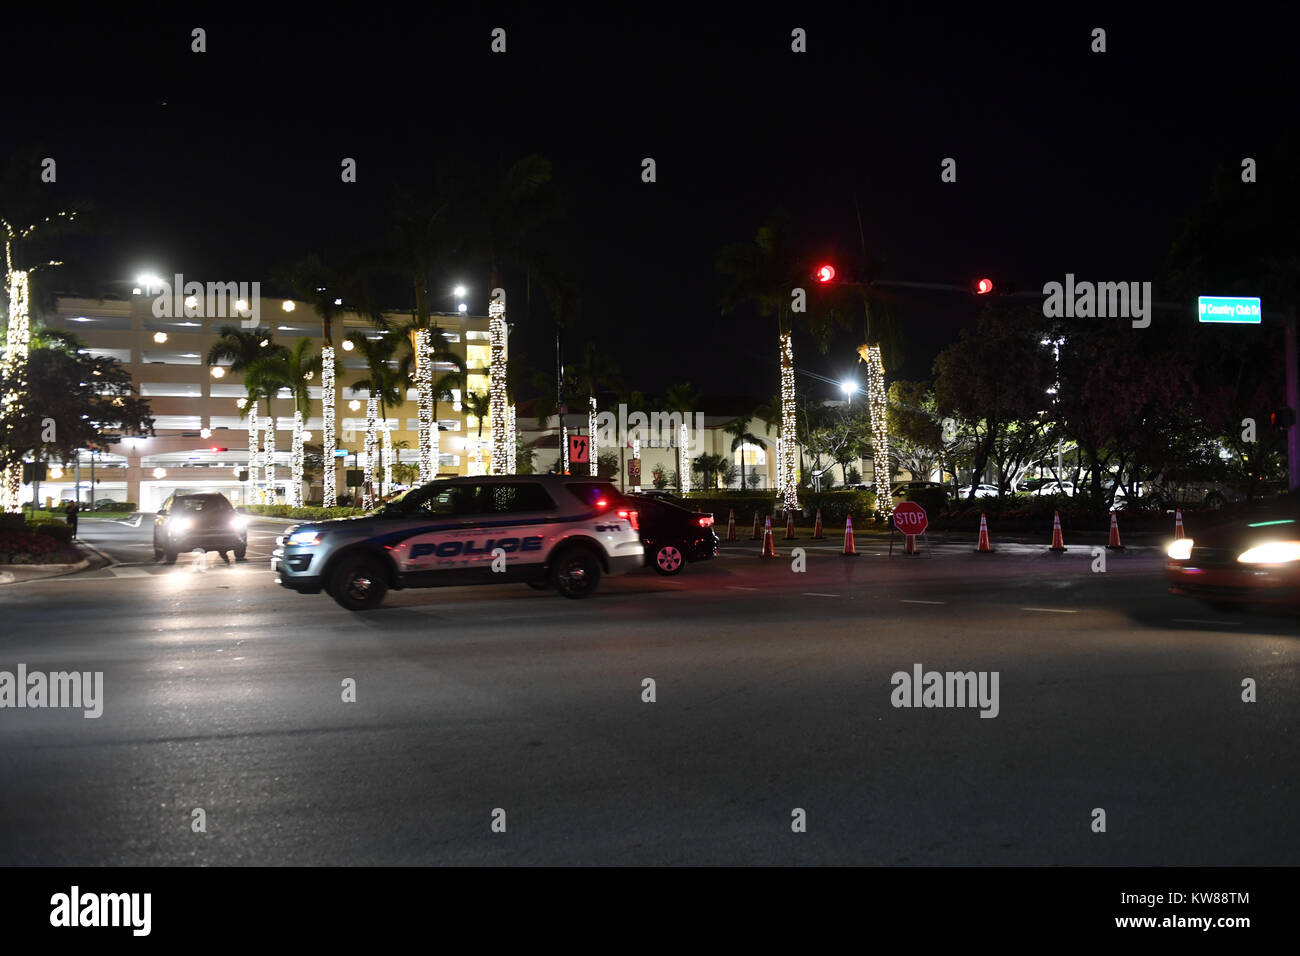 AVENTURA, FL - Décembre 23 : La police a déclaré qu'il n'y a pas de victimes et aucun signe de coups de feu. L'Aventura Mall a été évacué après avoir fait l'objet d'isolement cellulaire et devint étrangement calme lorsque le centre commercial a été forcé de fermer plus tôt sur l'un des jours de shopping les plus importants de l'année le 23 décembre 2017 à Aventura, en Floride. Personnes : Aventura Mall Banque D'Images